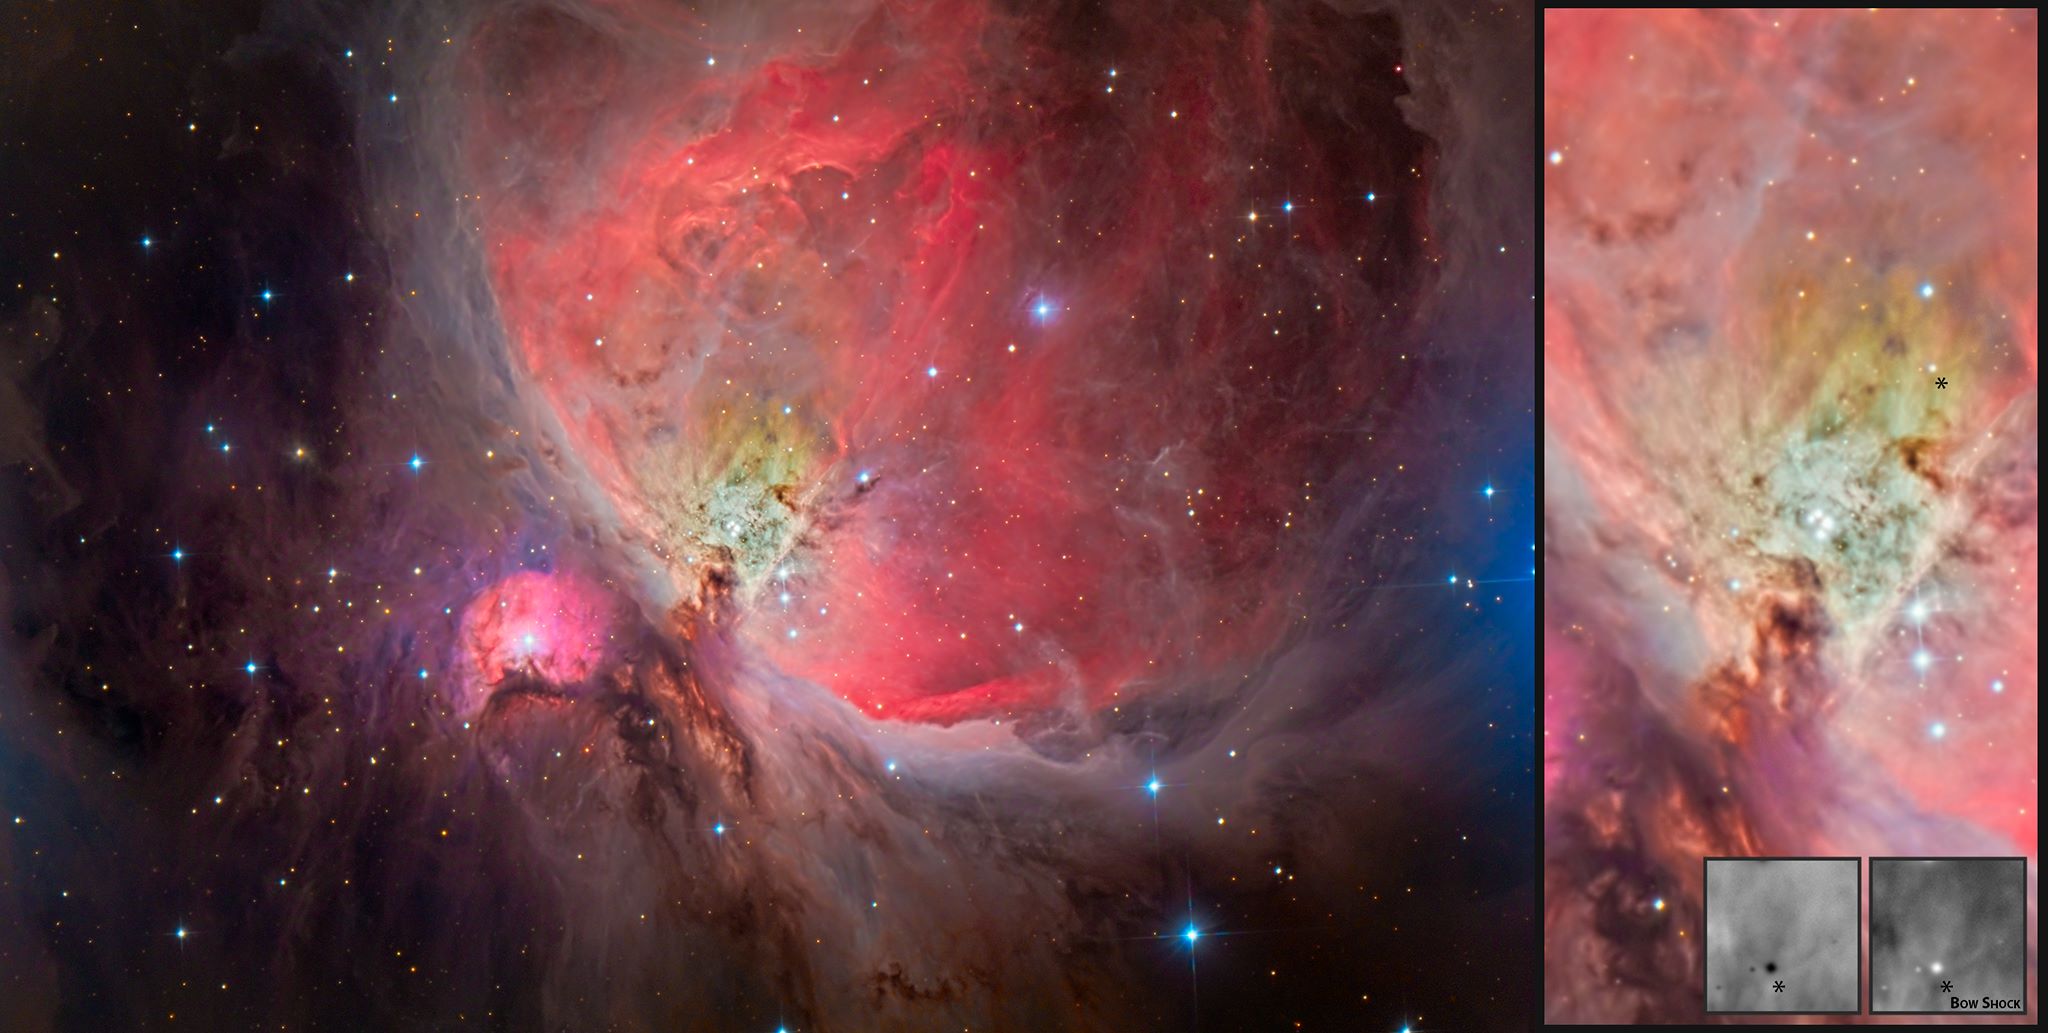 A sinistra una foto della nebulosa di Orione in cui sono ben visibili le polveri e i gas ionizzati. A destra un dettaglio del centro della nebulosa in cui si può osservare un bow shock prodotto dal vento stellare.Immagine fornita da Luca Fornaciari